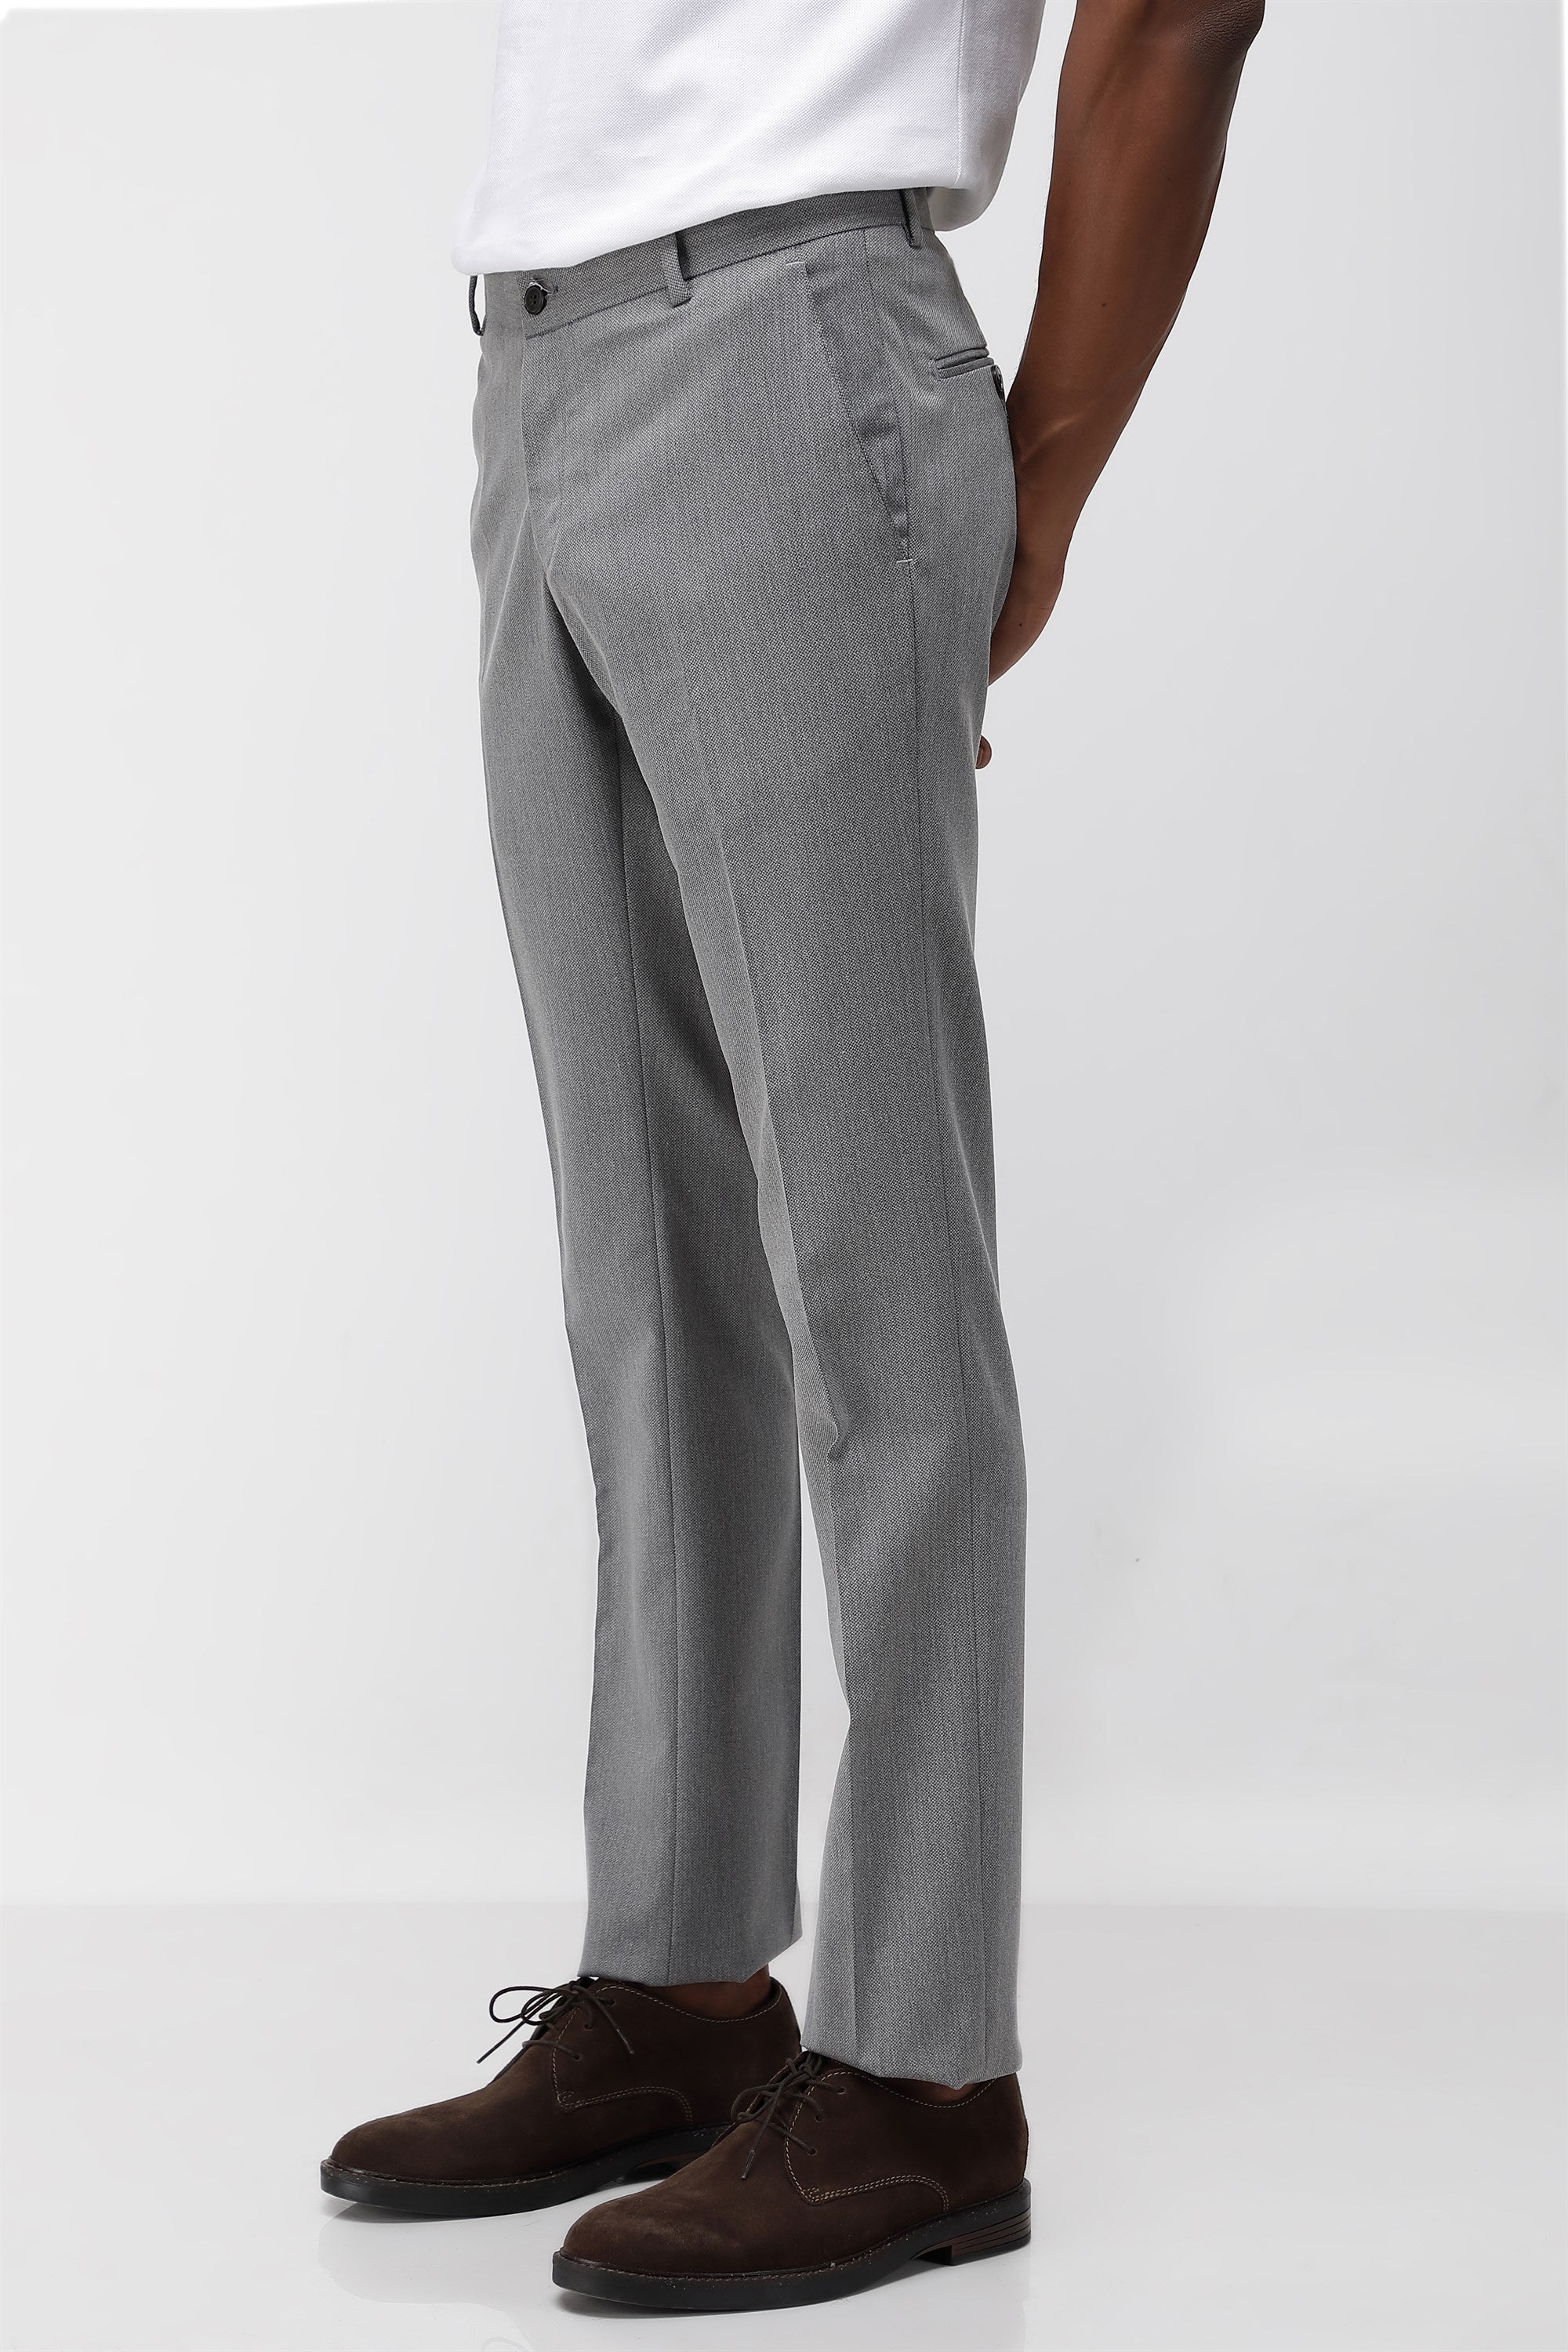 Grey Solid Men Formal Pant, Regular Fit at Rs 500 in Mumbai | ID:  26084523273